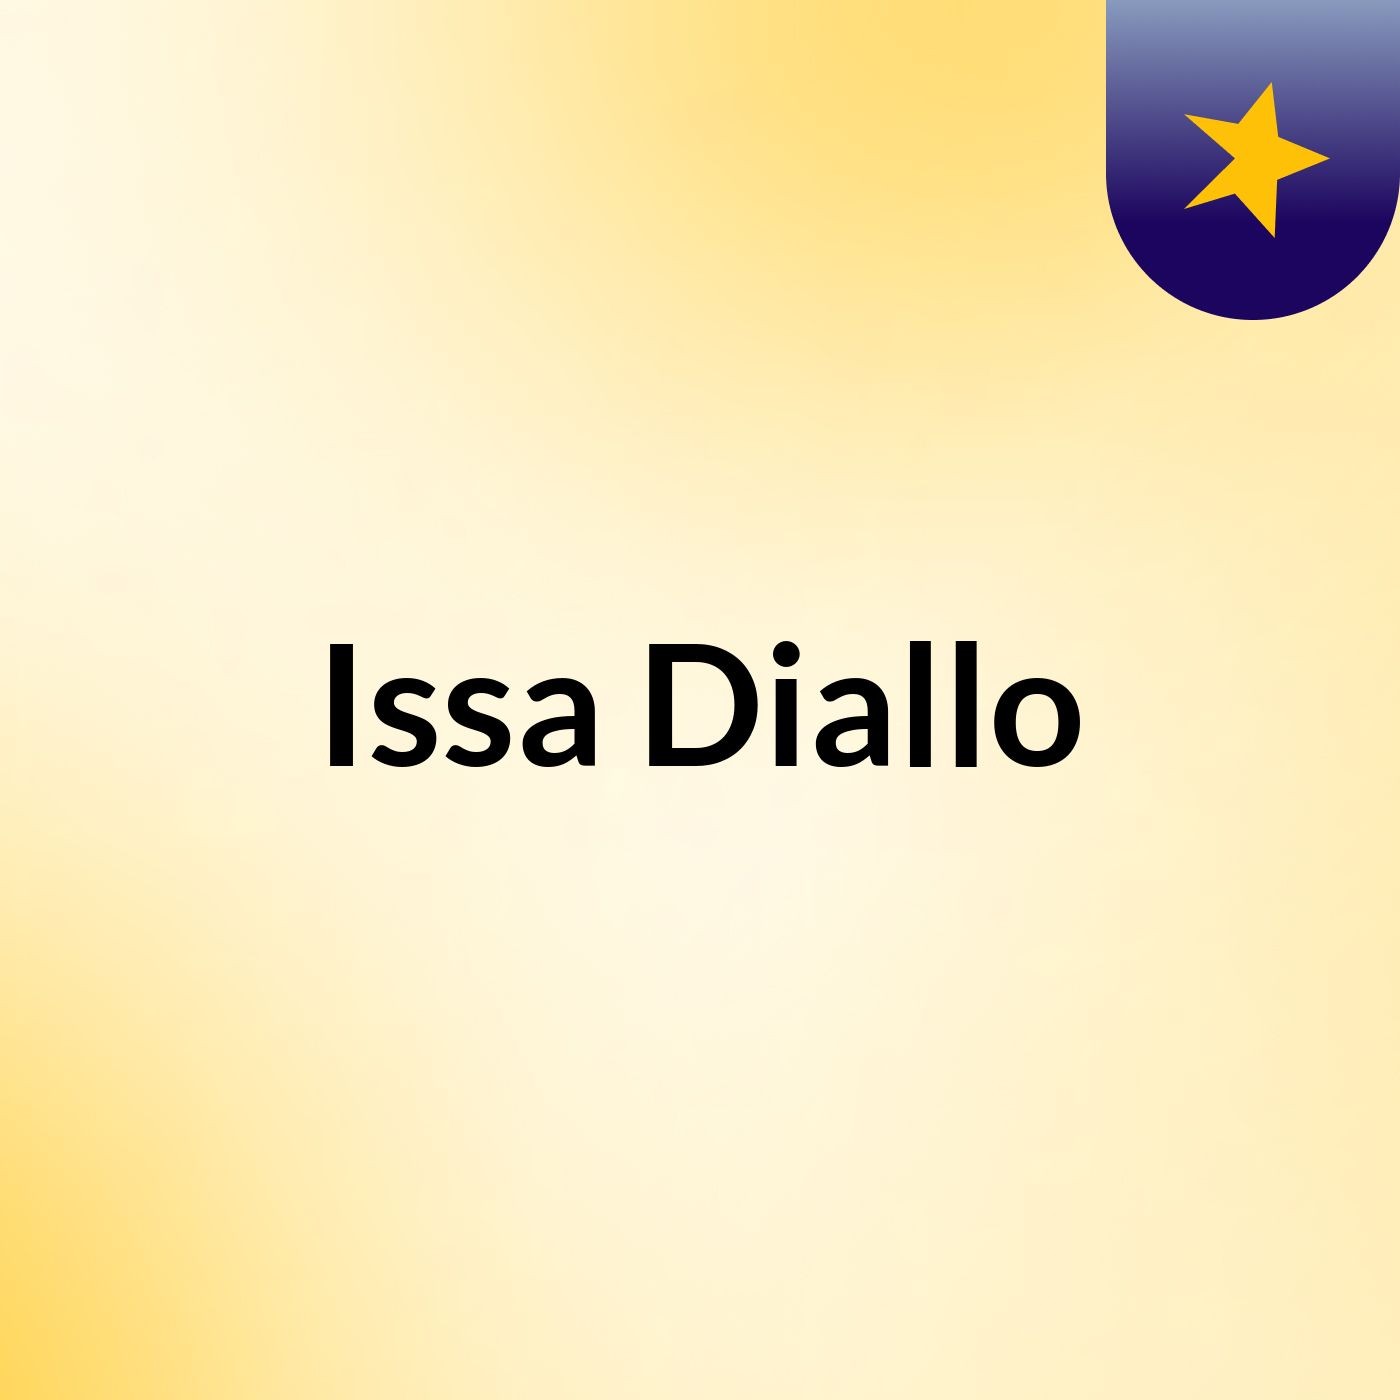 Issa Diallo